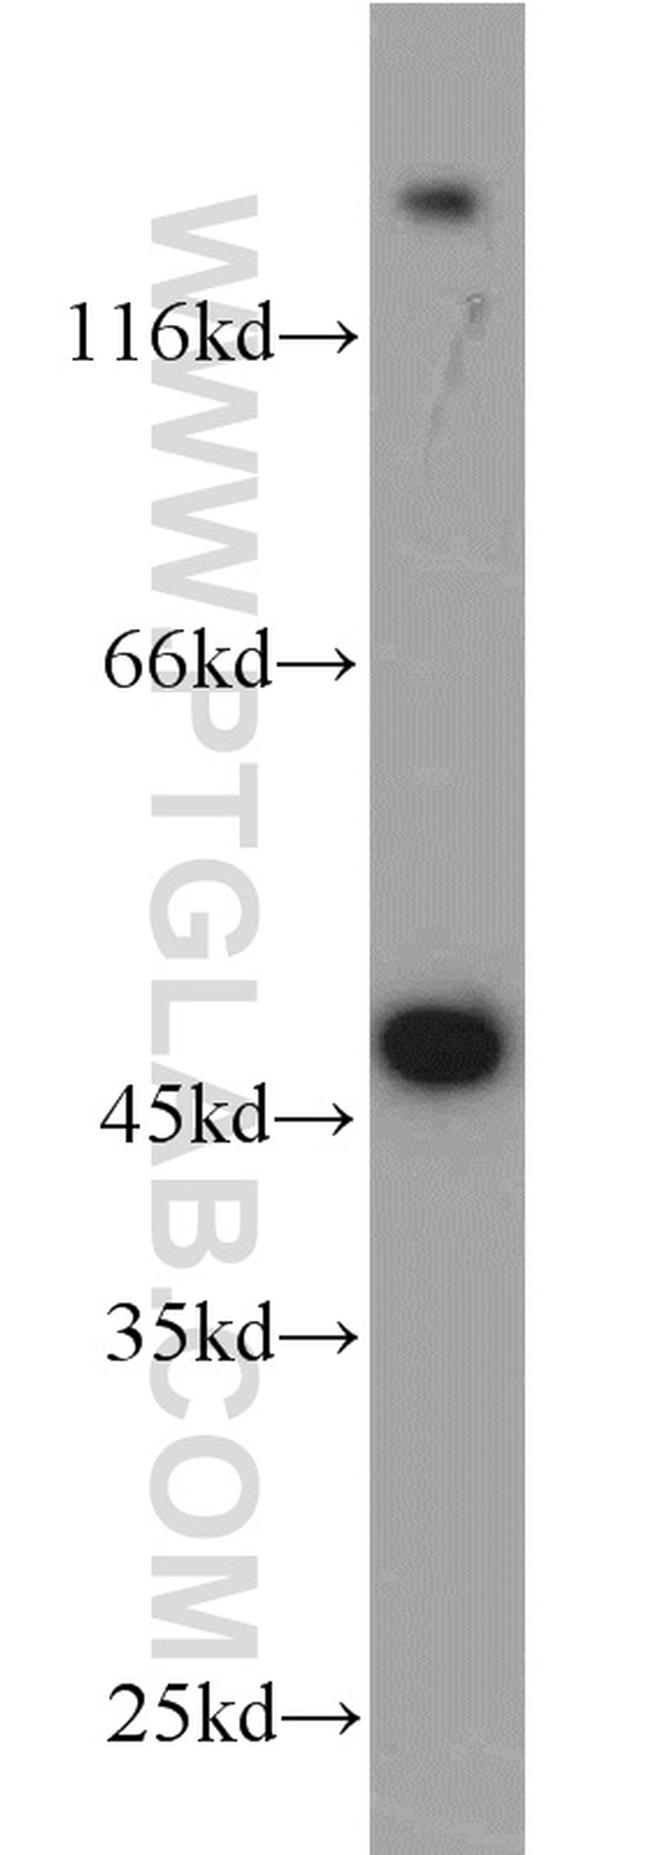 ADH7 Antibody in Western Blot (WB)